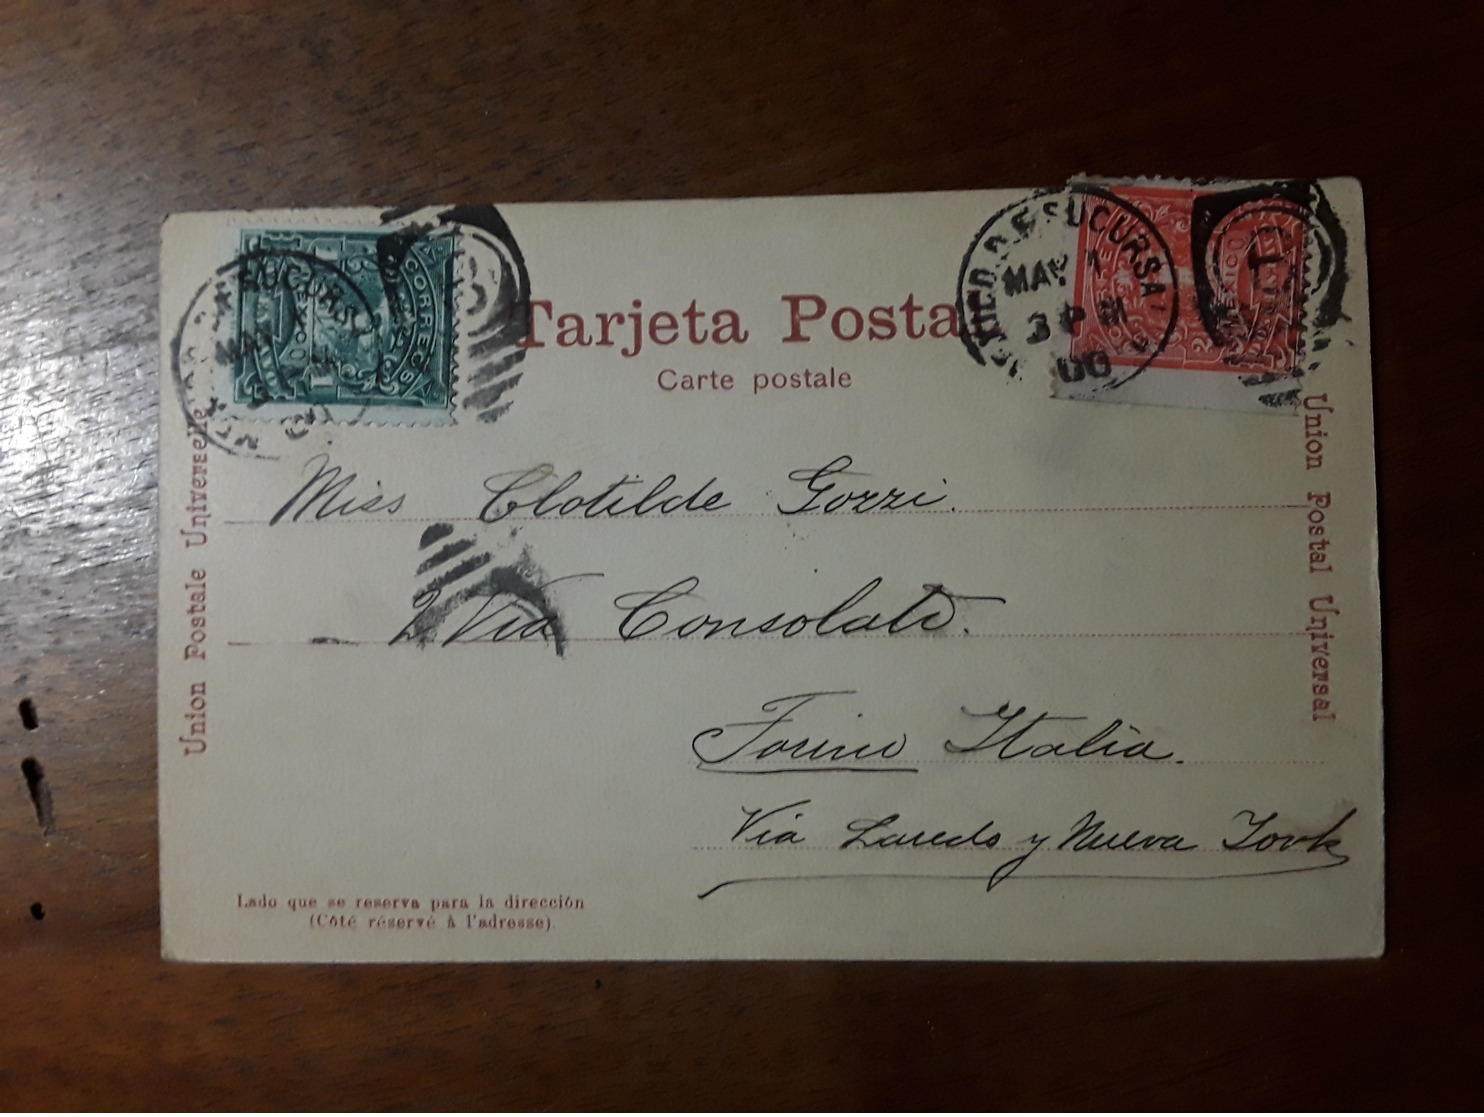 Cartolina Postale,  Postcard 1900, Mexico, La Catedral - Messico